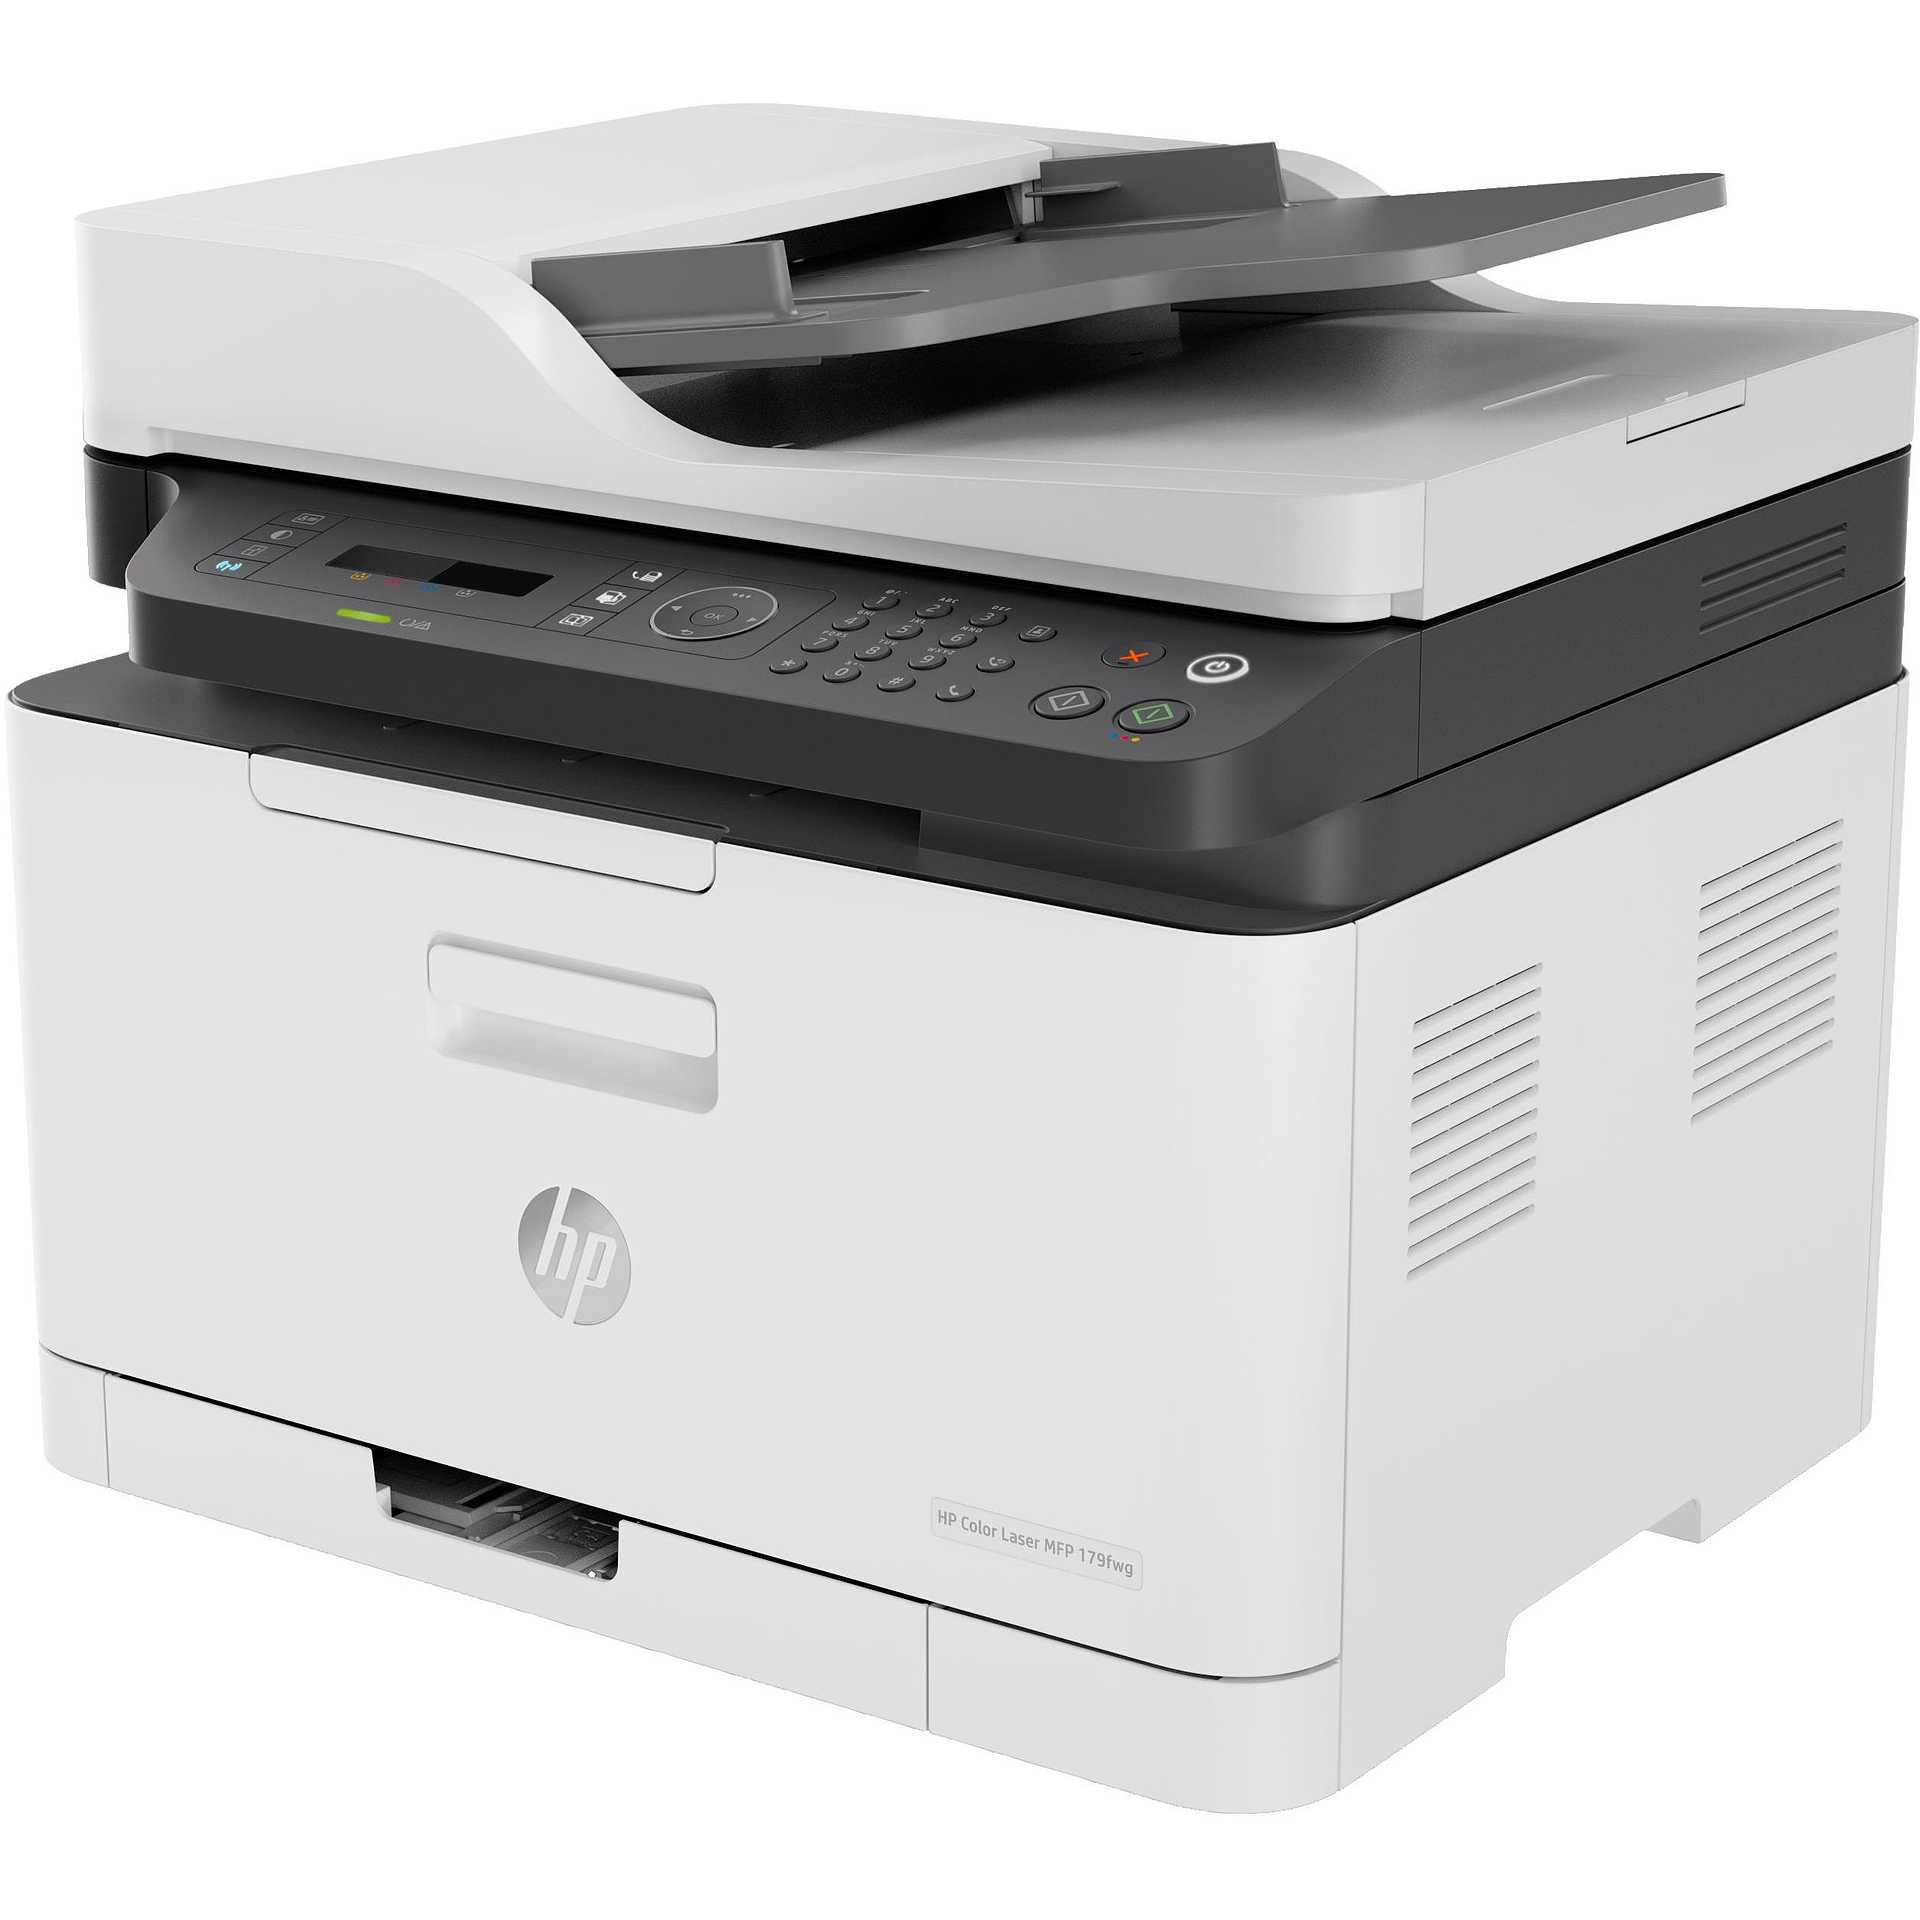 HP MFP 179fnw Color Stampante laser 4in1 Wifi colore bianco e grigio - Stampanti e scanner multifunzioni Laser - ClickForShop